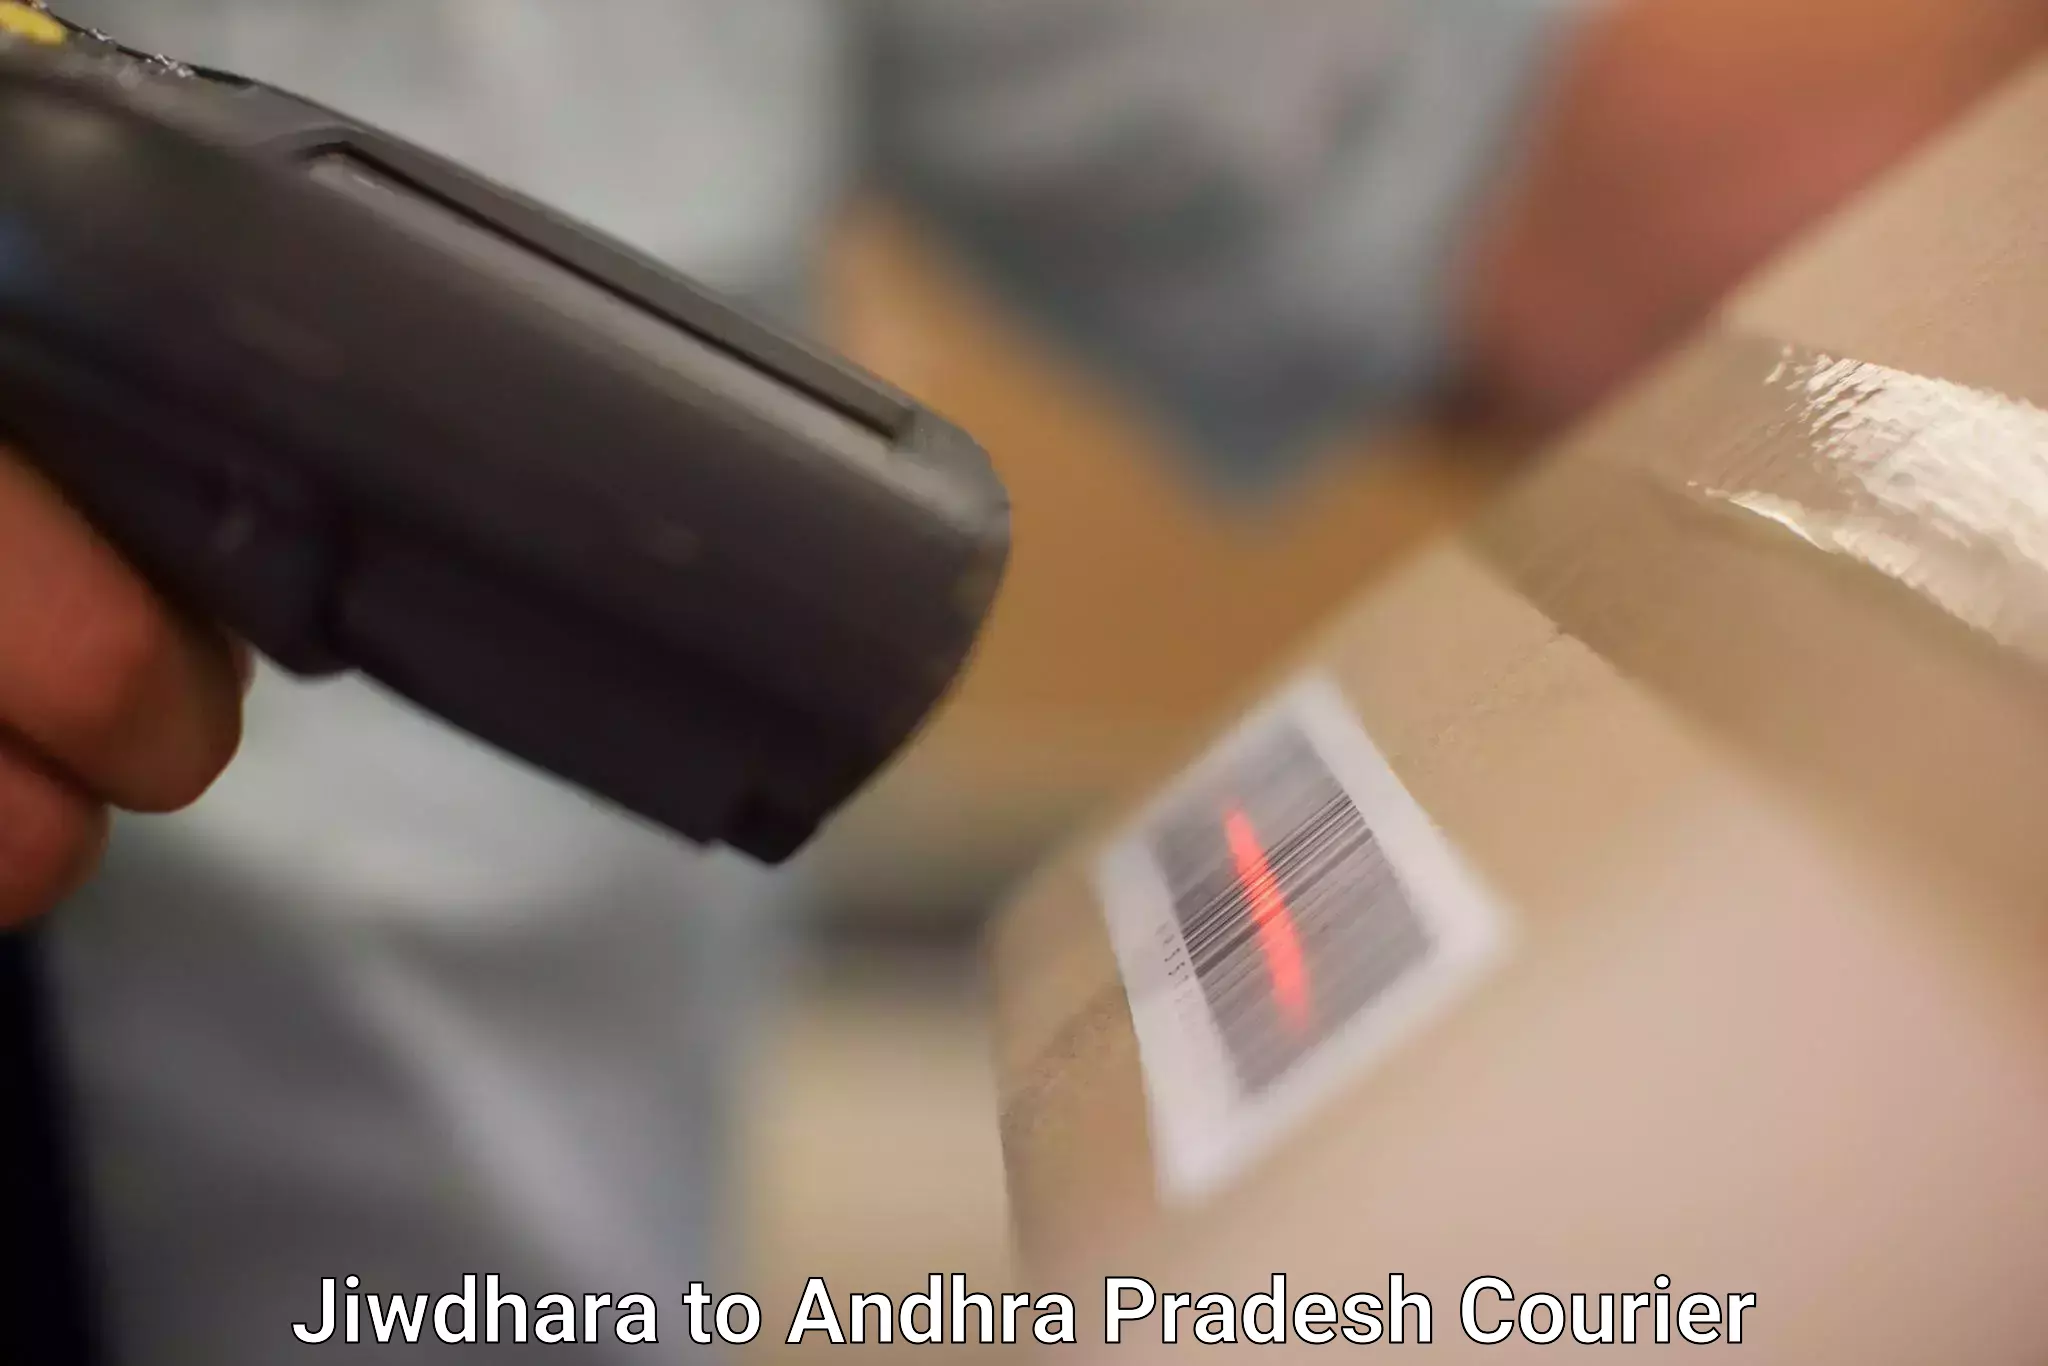 Pharmaceutical courier Jiwdhara to Andhra Pradesh